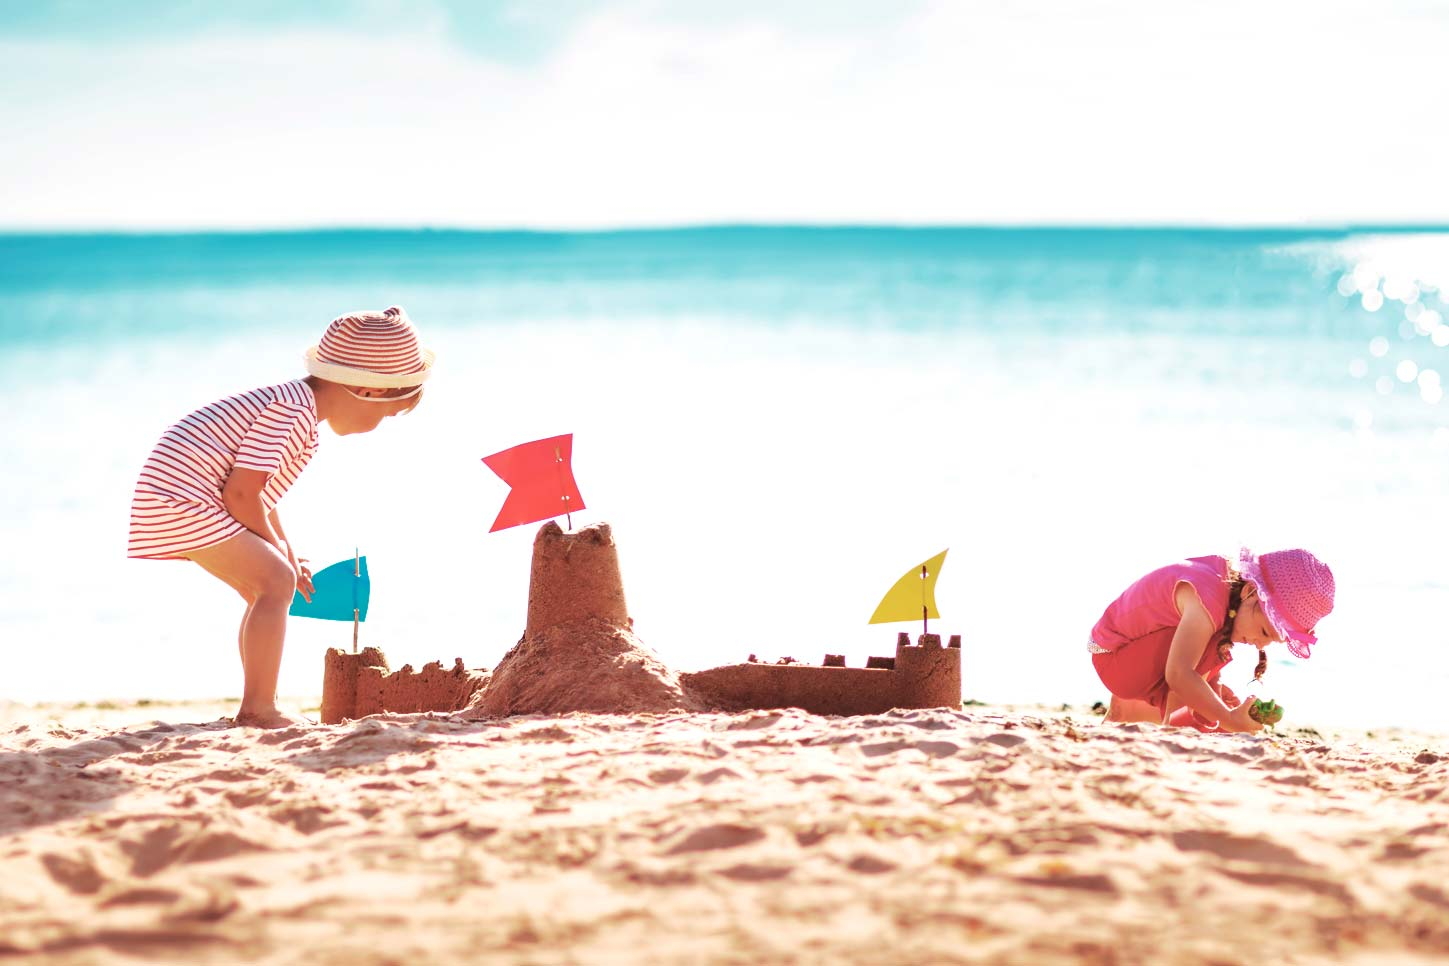 Jeux, activités de plage : occuper enfants et parents